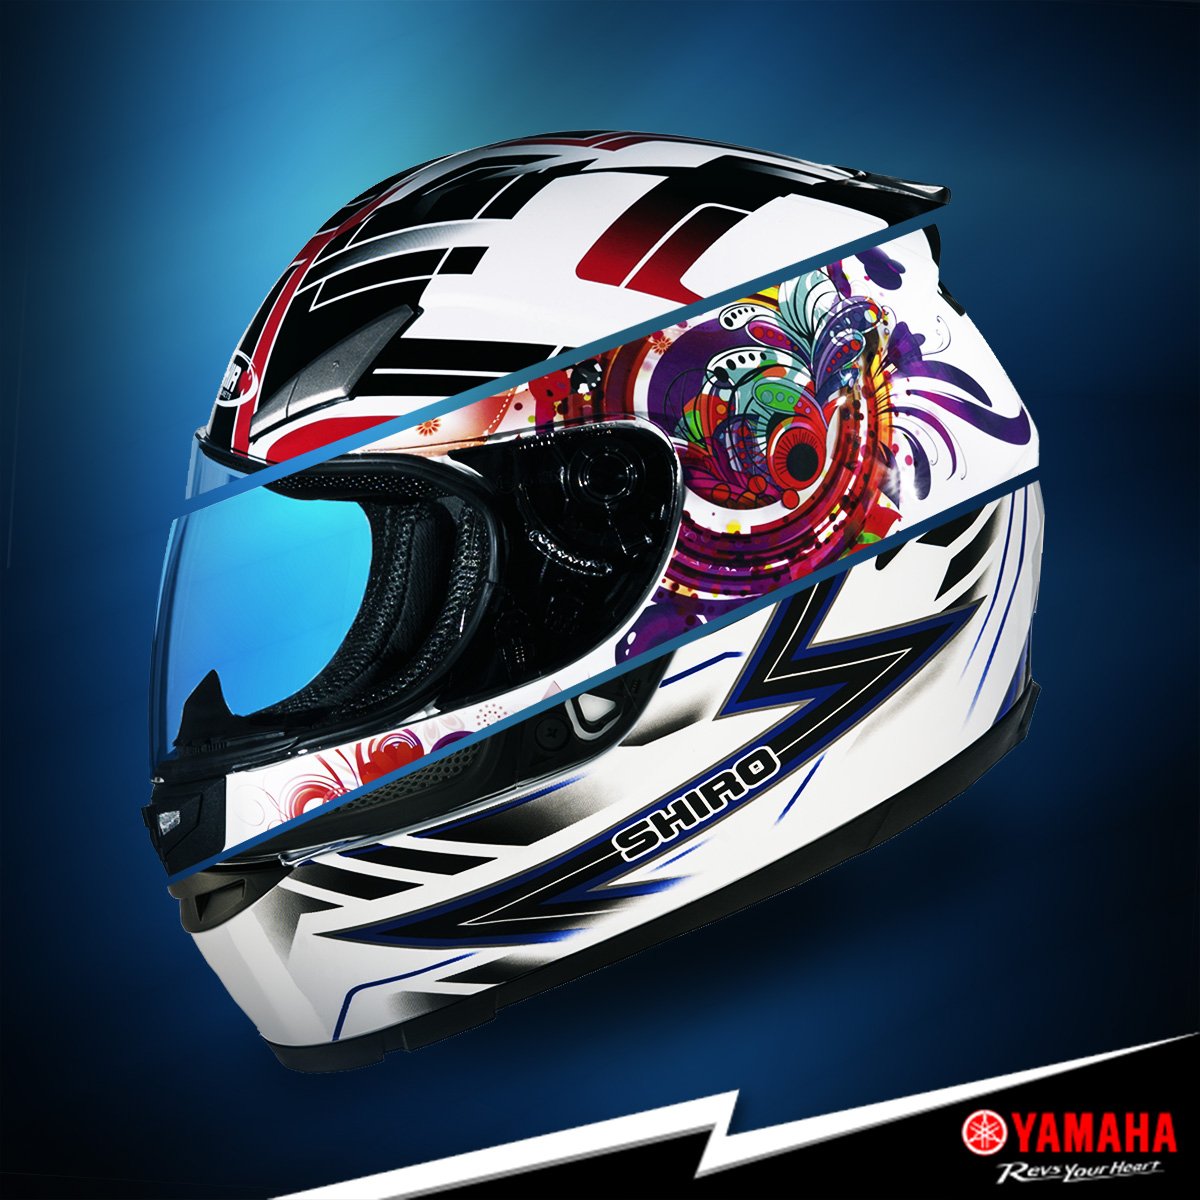 Yamaha Motor Colombia no Twitter: "Descubre los nuevos diseños cascos Shiro en nuestros de venta Incolmotos Yamaha. https://t.co/GwpJdC0Q5f" / Twitter